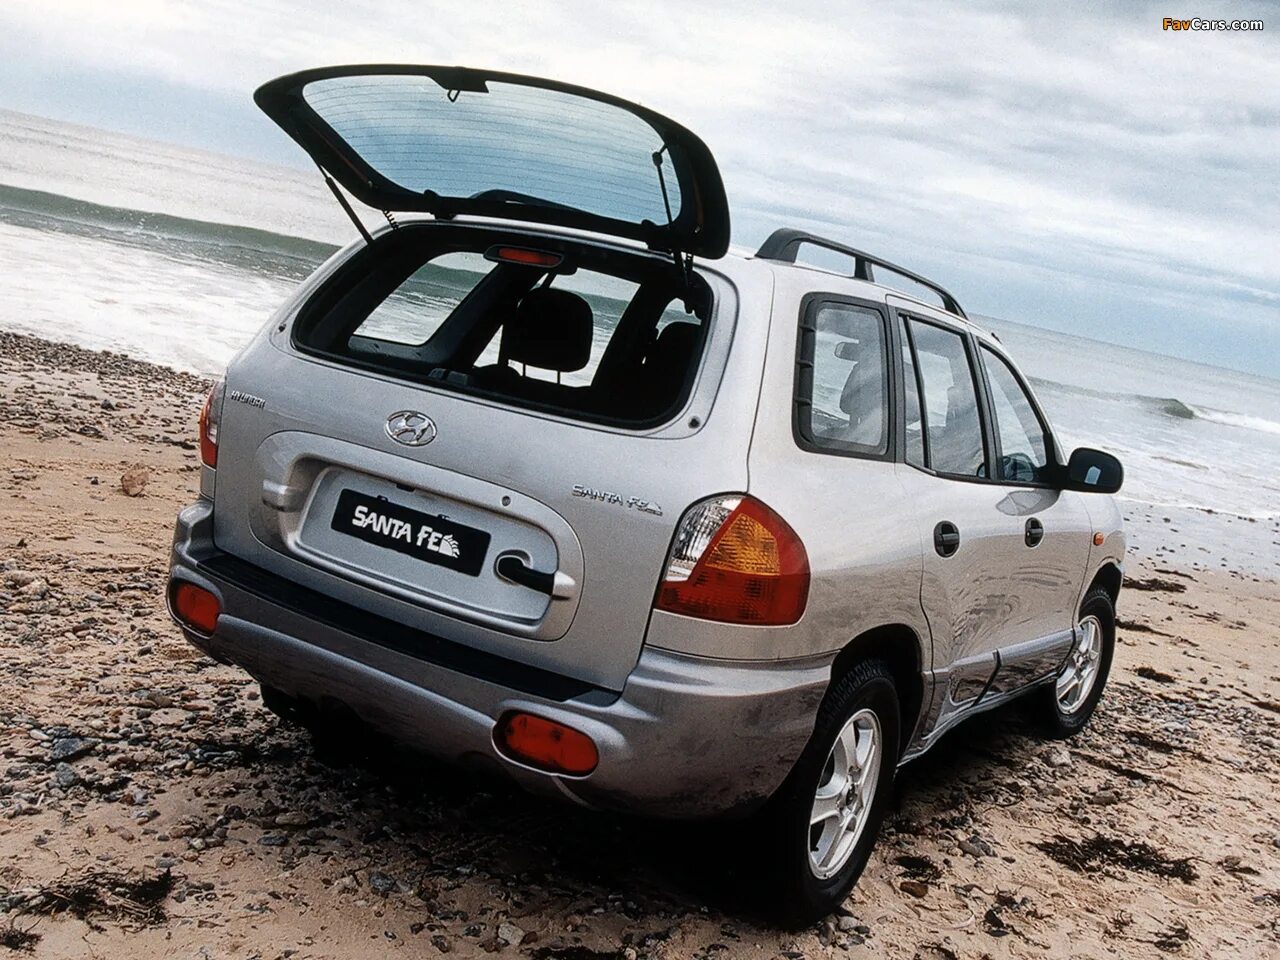 Санта фе 1 поколения дизель. Hyundai Santa Fe 2001. Hyundai Santa Fe 2000. Хёндай Санта Фе 2000-2001. Хендэ Санта Фе 2001.